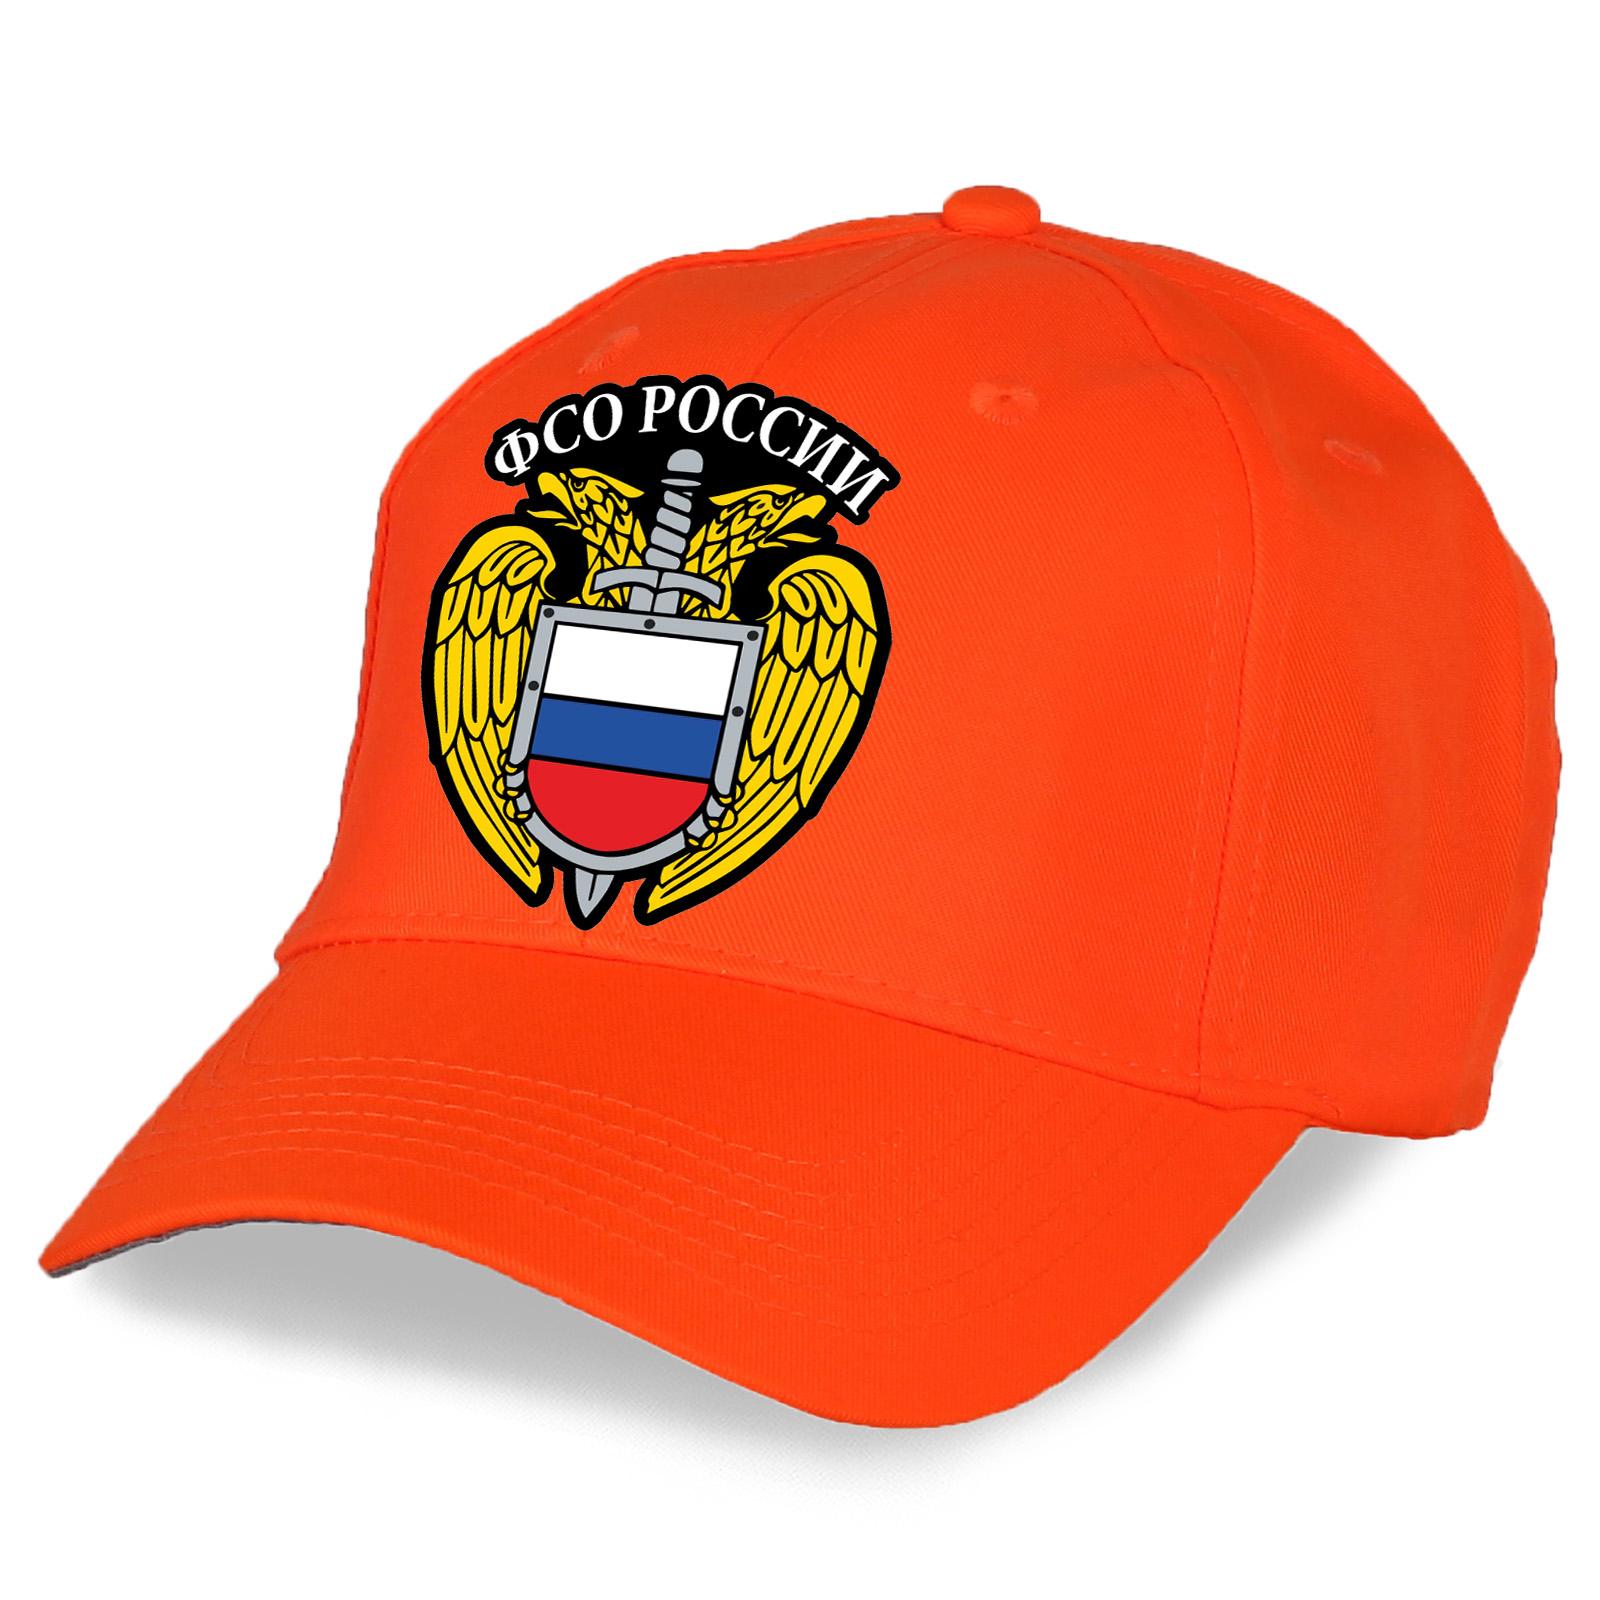 Военная Кепка с вышивкой ФСО России (Ярко-оранжевая)